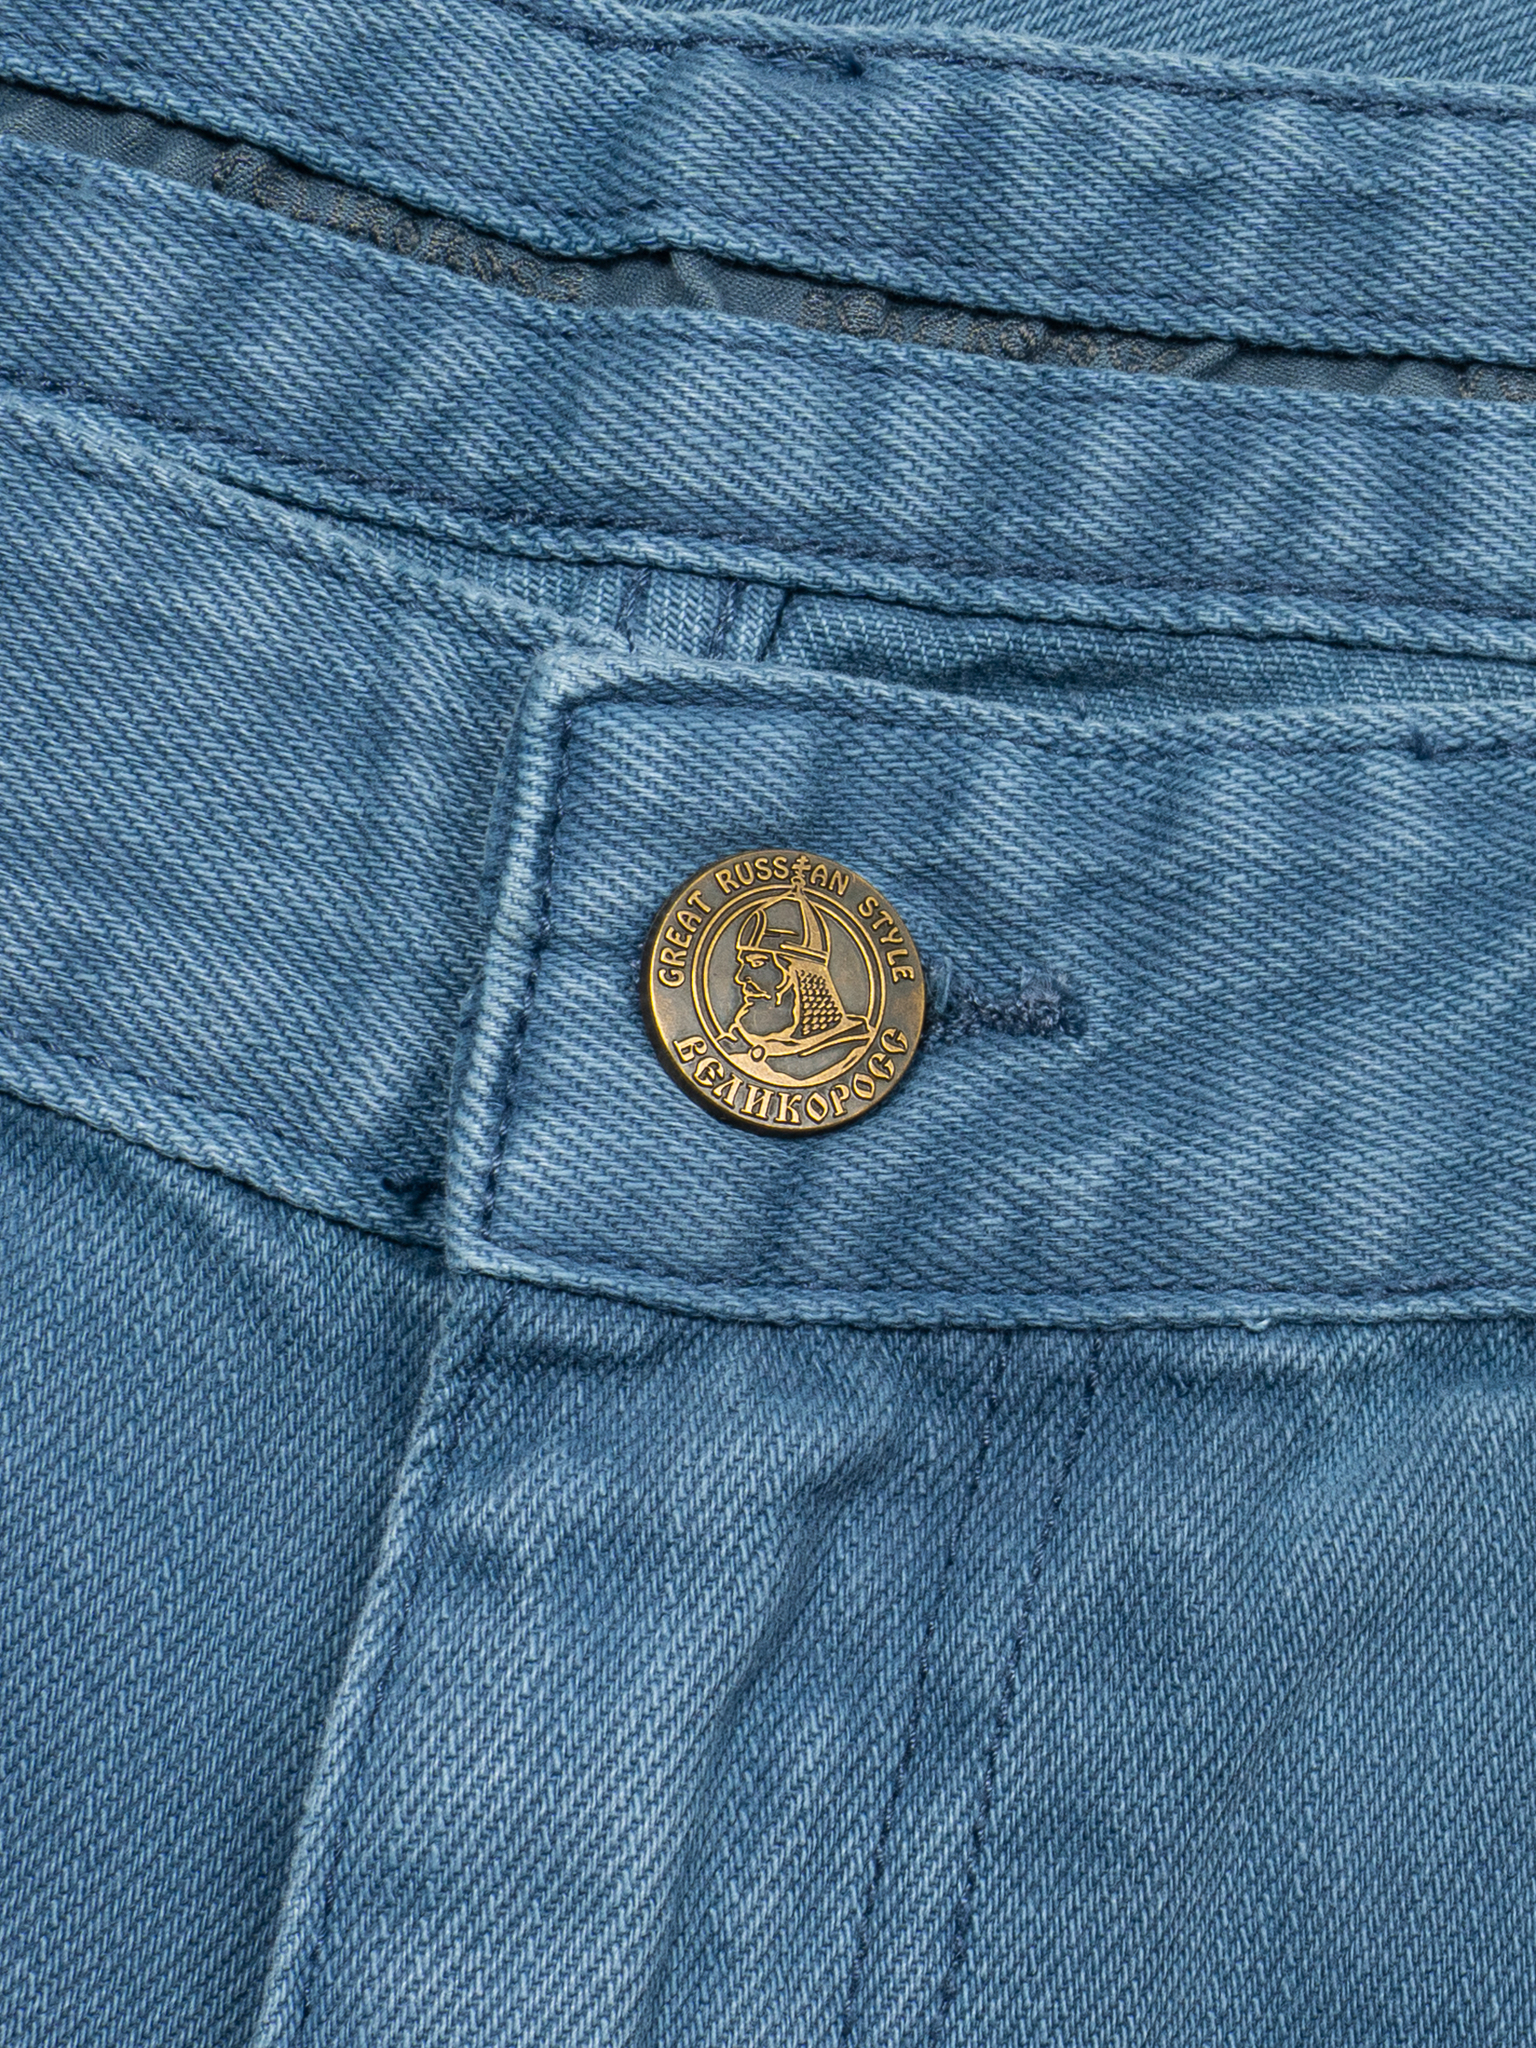 джинсы плотные